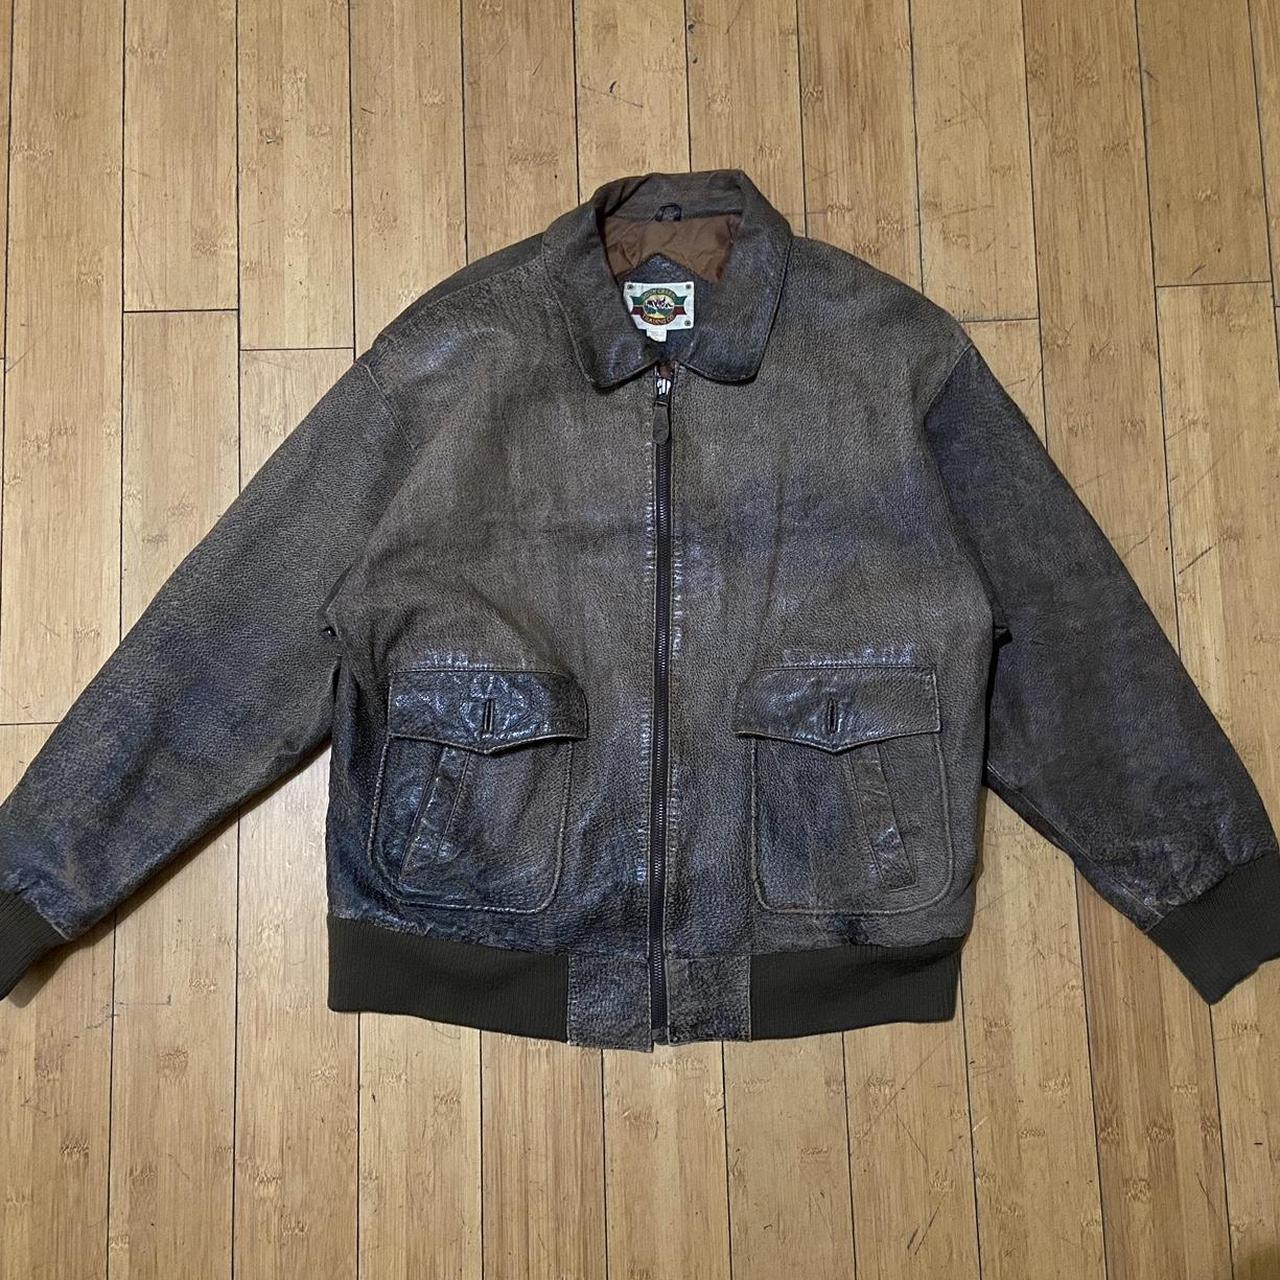 Vintage Leather Jacket Made in Korea Size Large... - Depop